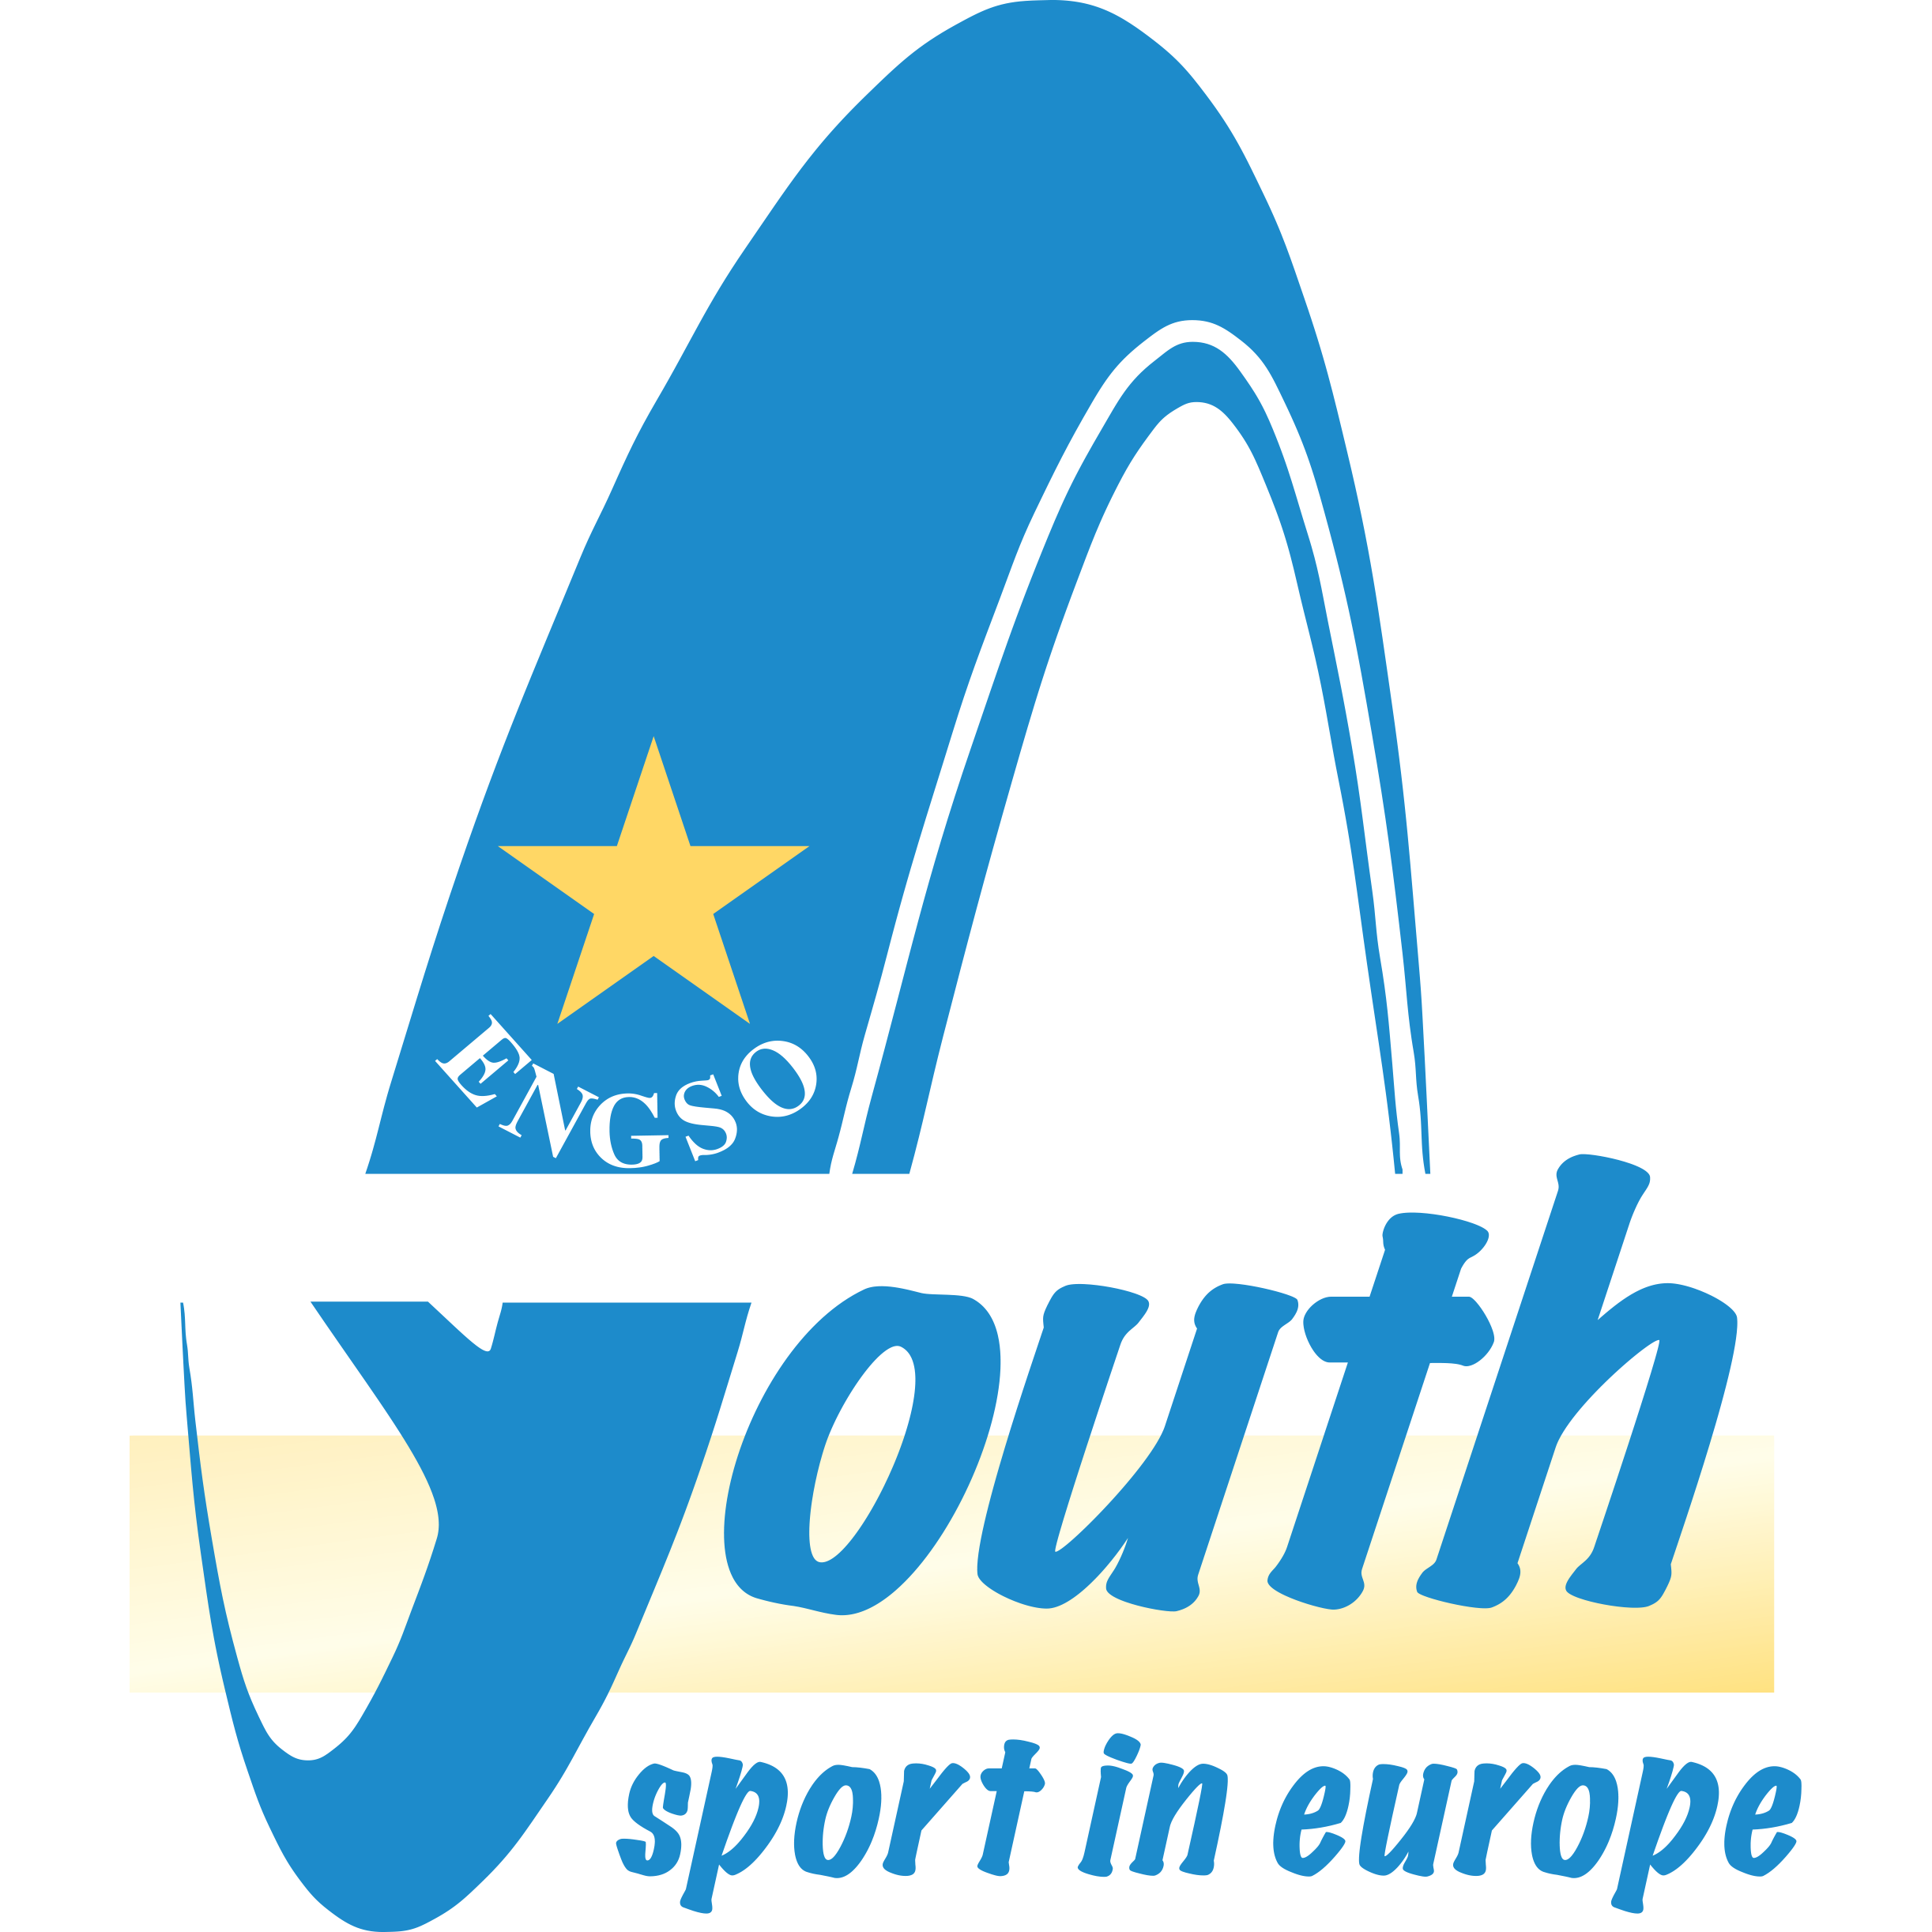 Society sport. Youth Sports logo. Youth Sports Society logo. Insport kg logo.